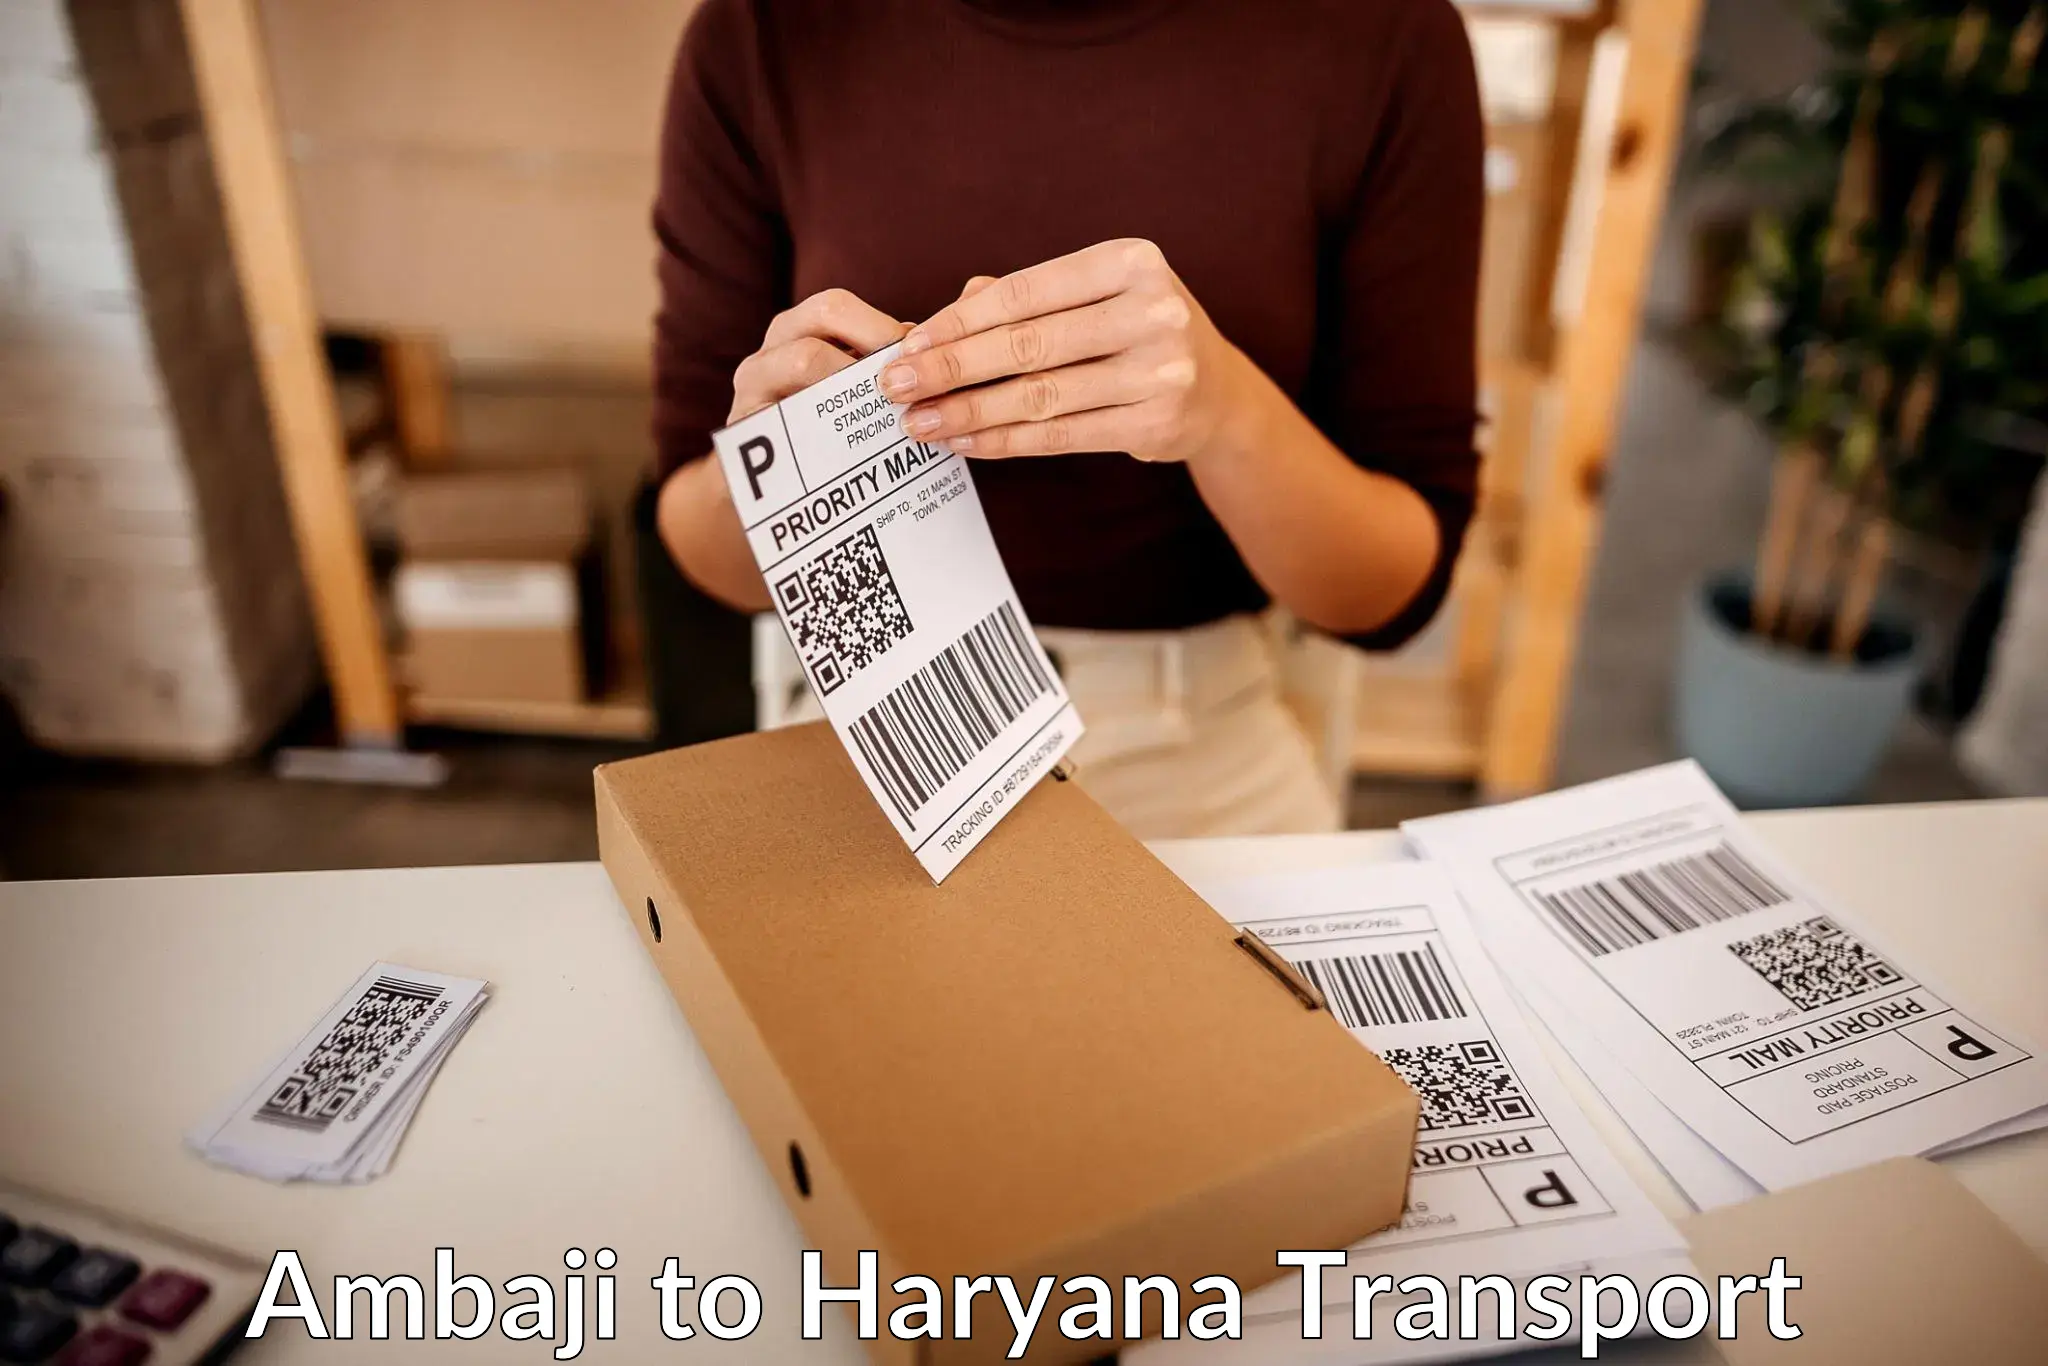 Parcel transport services Ambaji to IIIT Sonepat